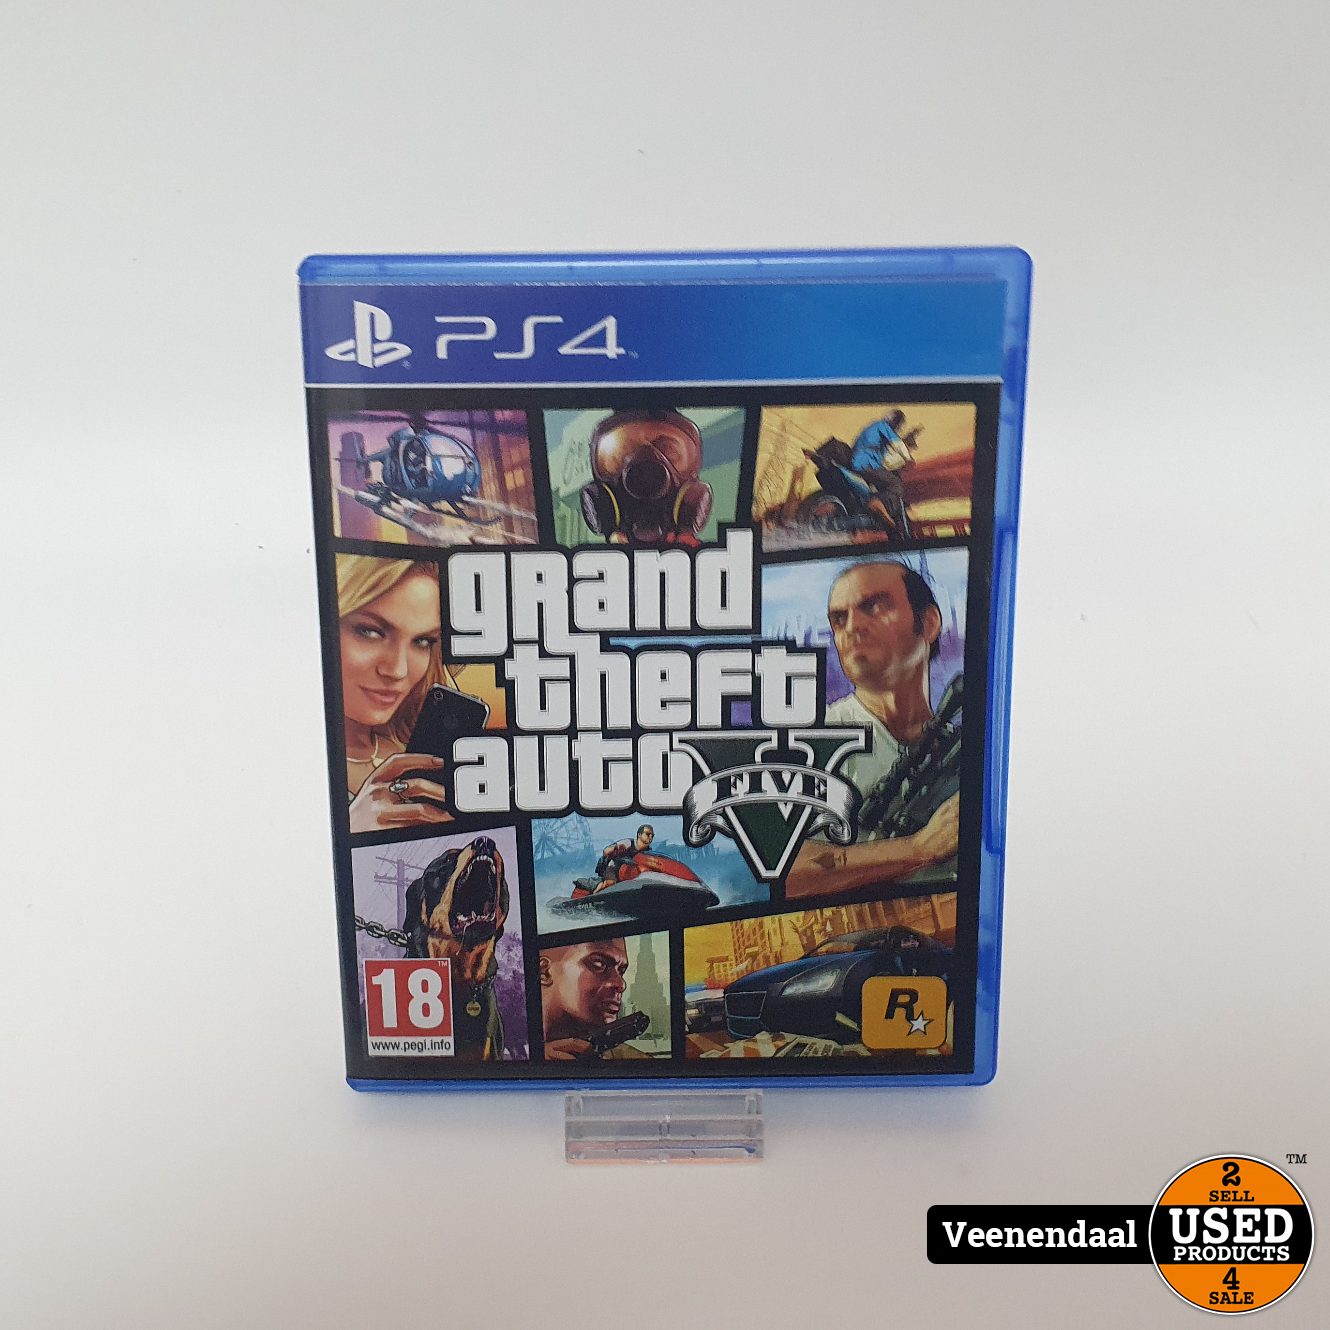 Grazen Beperkingen vod PS4 Game: Grand Theft Auto 5 in Nette Staat - Used Products Veenendaal